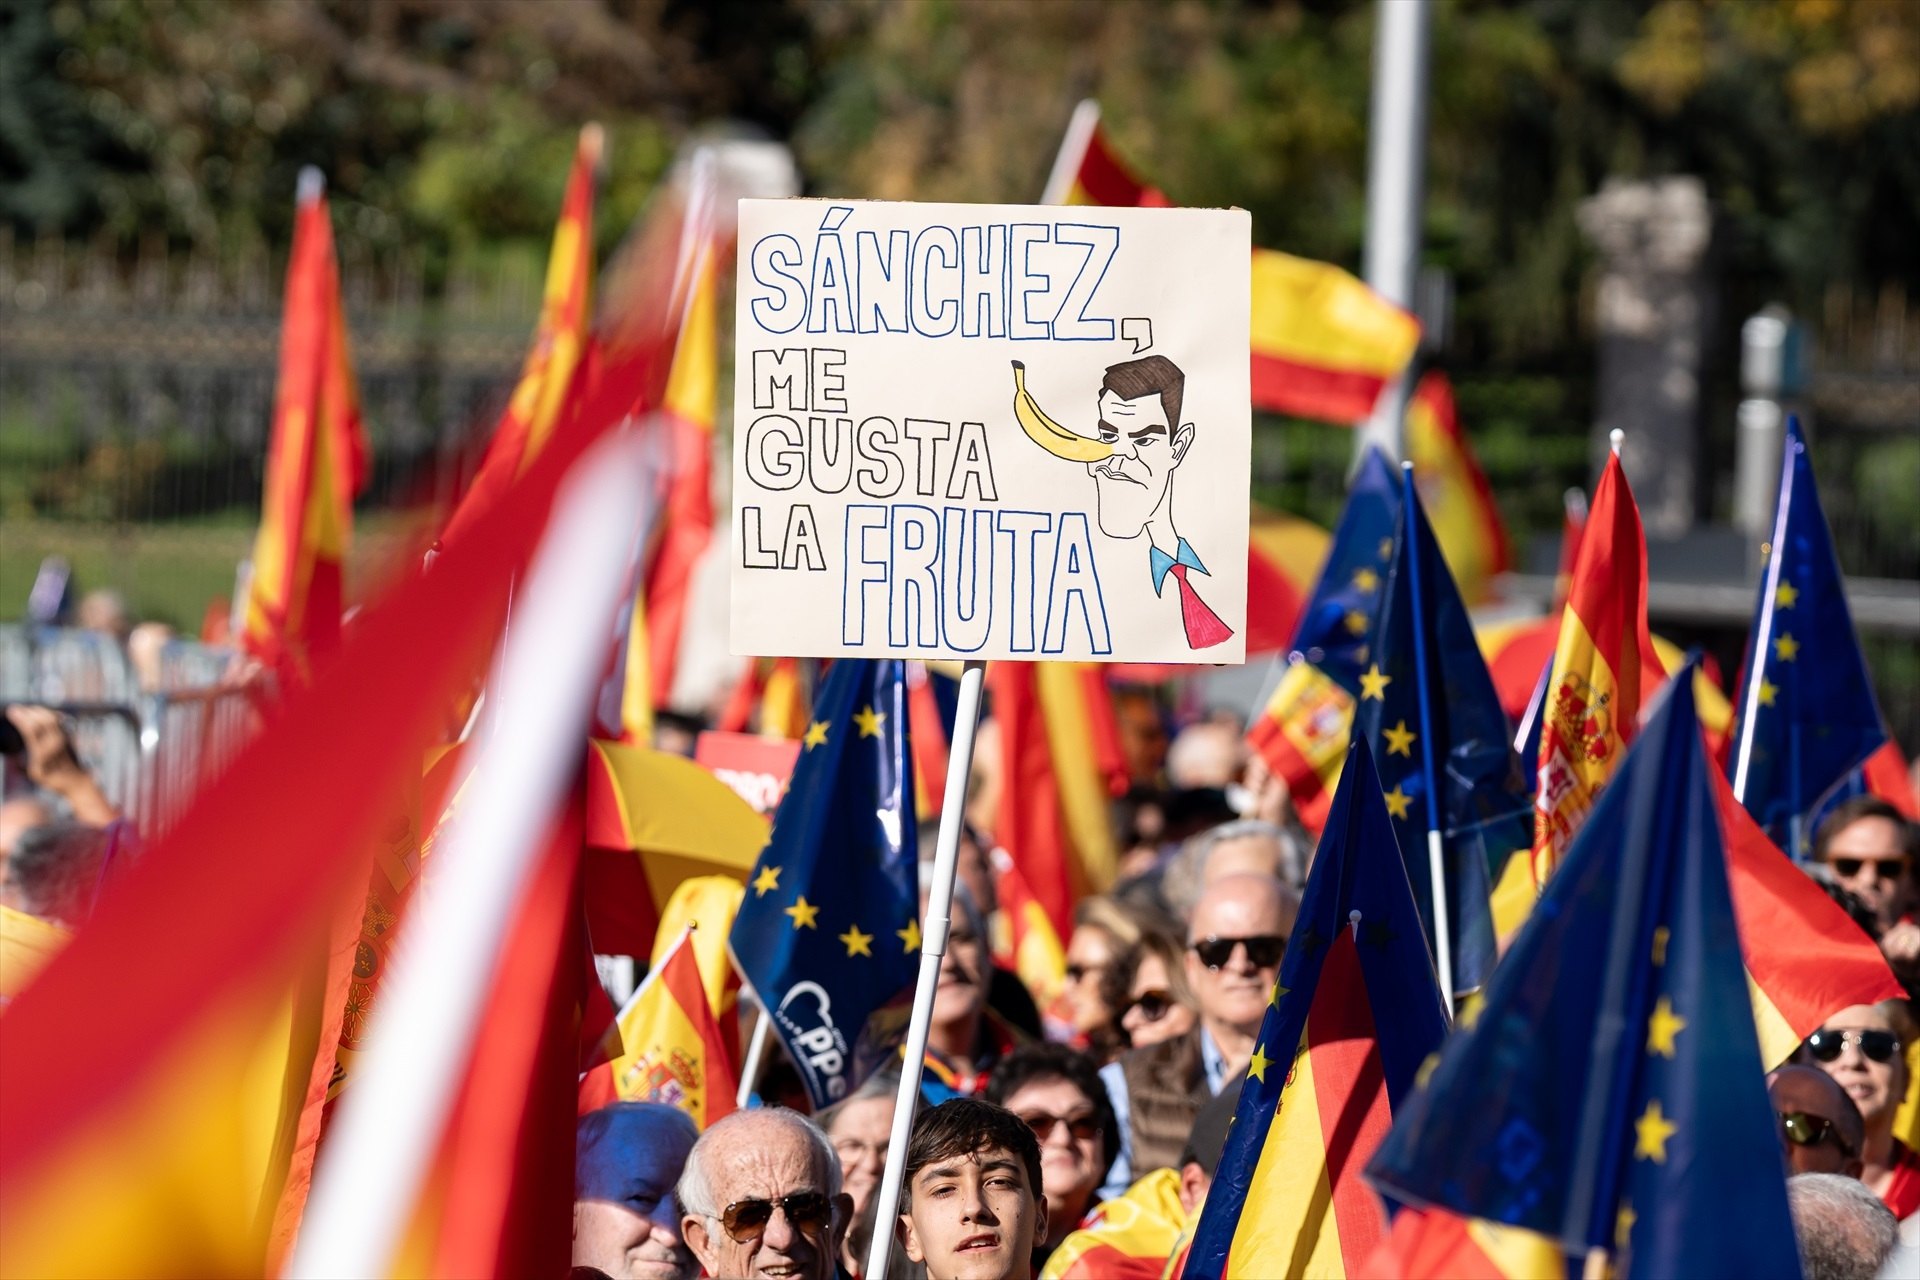 El españolismo radical convoca una nueva protesta contra Sánchez: "Ni Putin, ni Puigdemont, ni narcos"